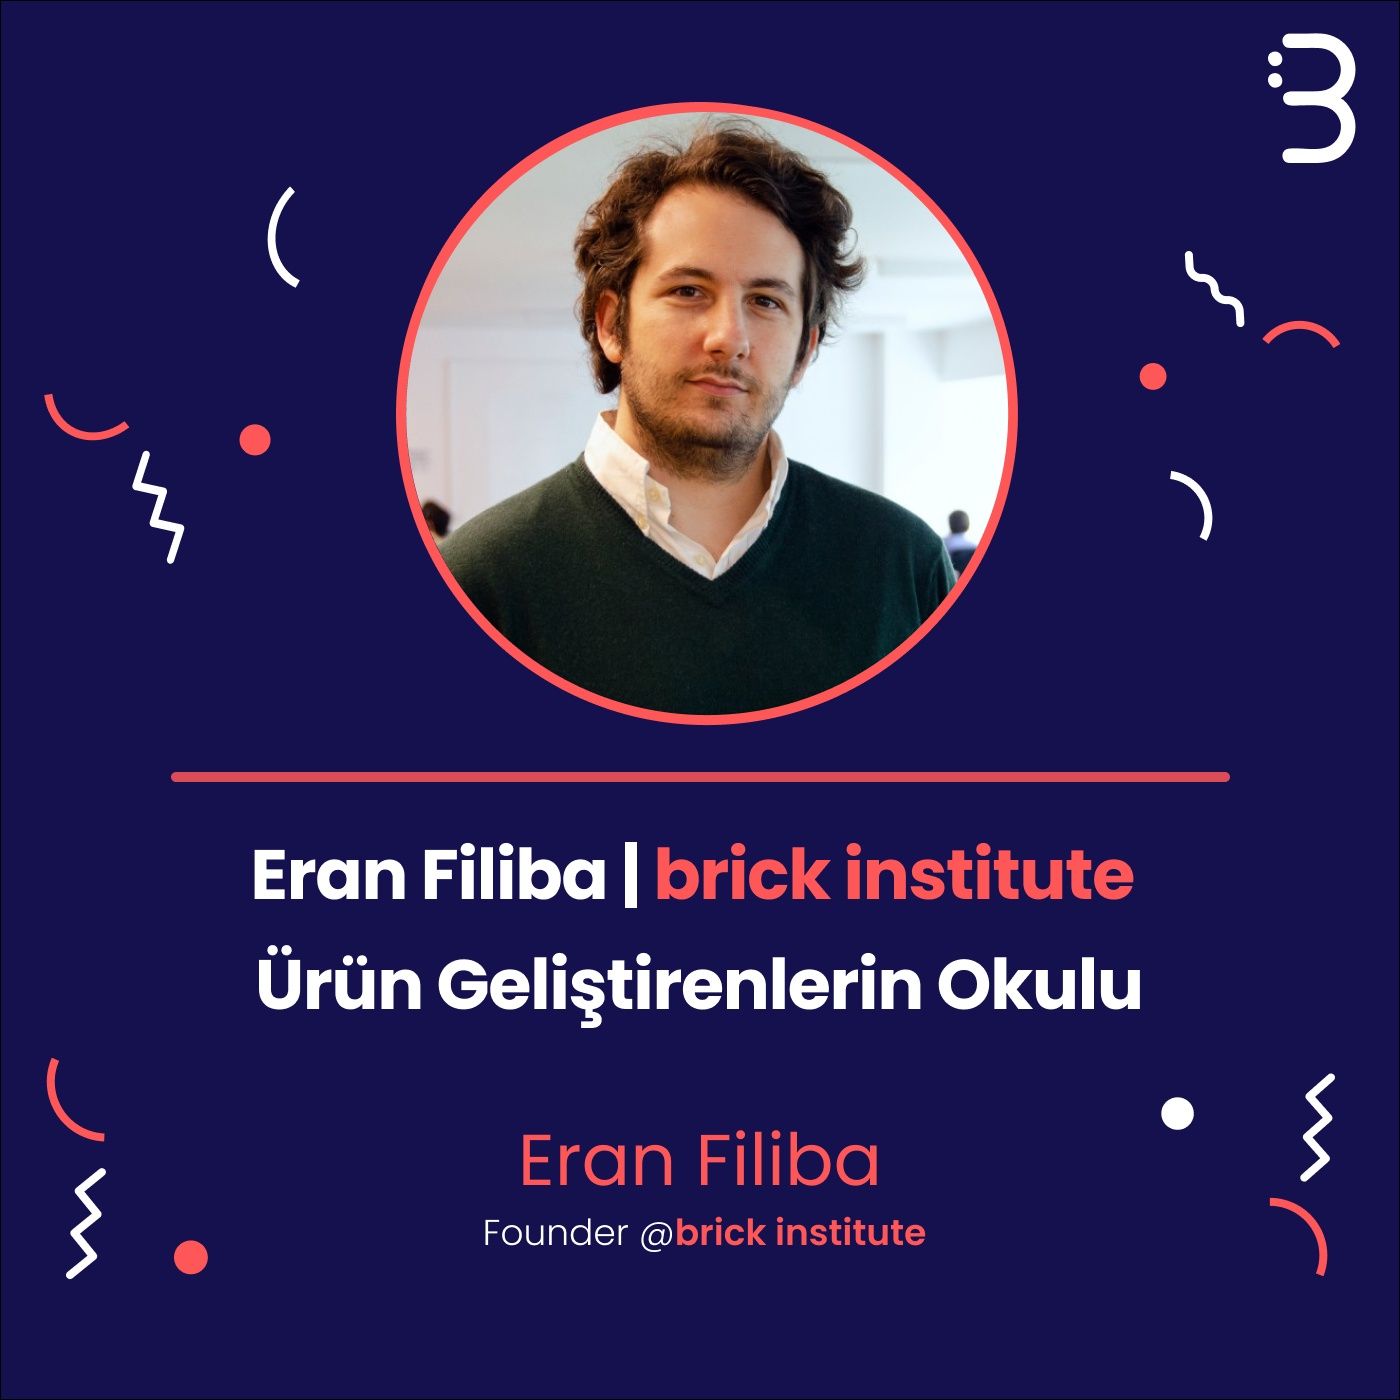 Eran Filiba | Brick Institute - Ürün Geliştirenlerin Okulu